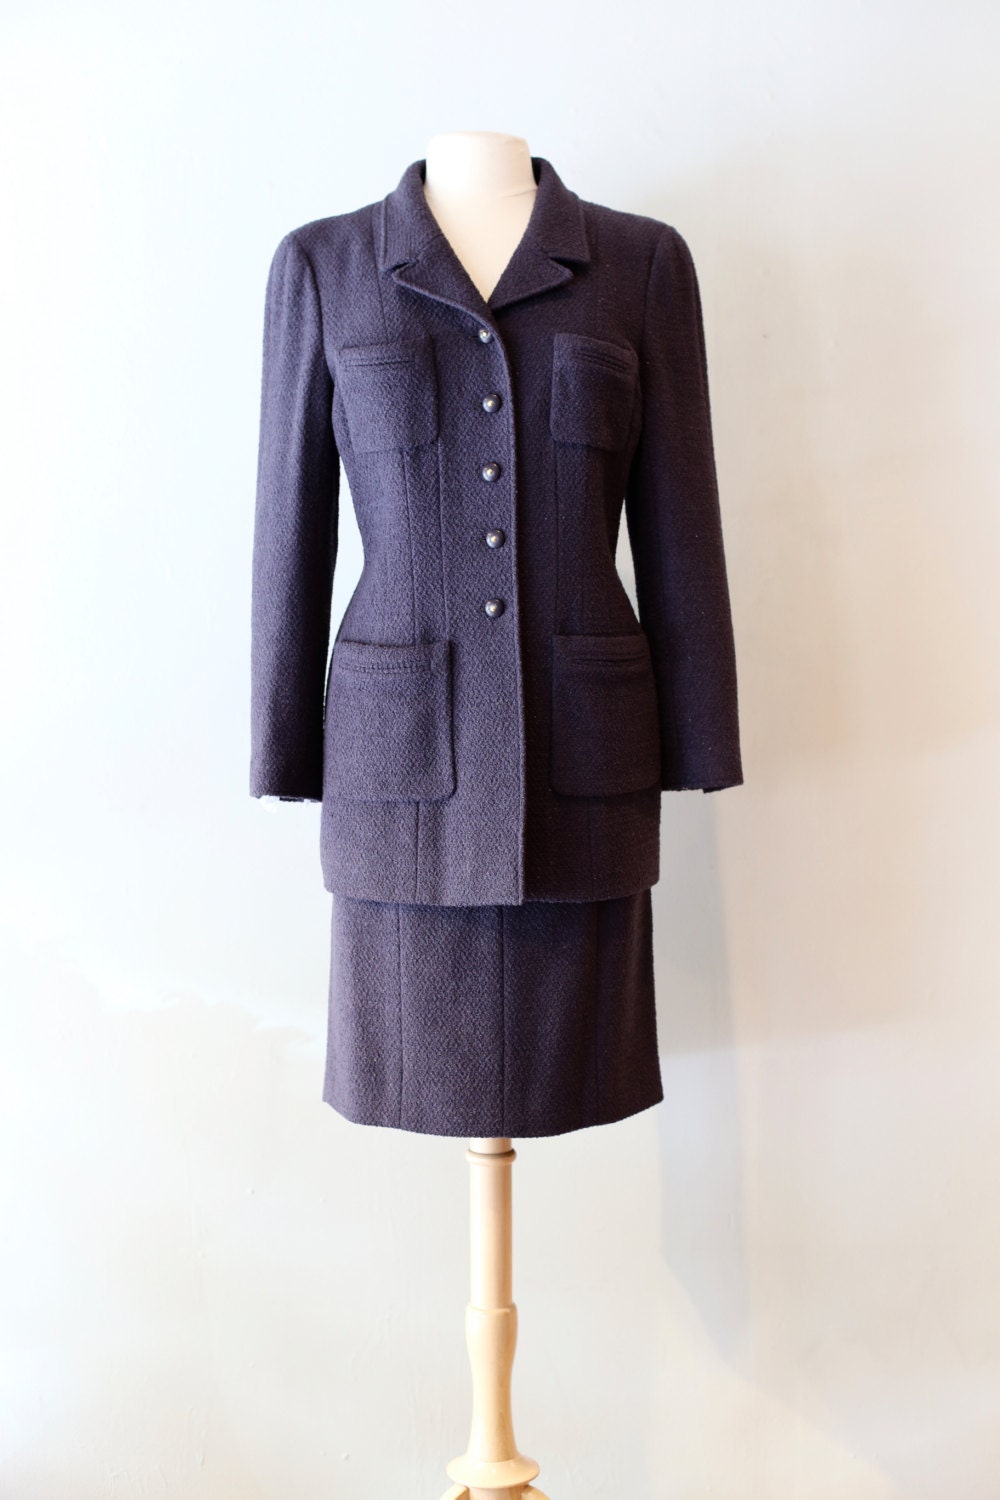 Vintage Chanel Ladies Suit Vintage Metallic Wool Suit By